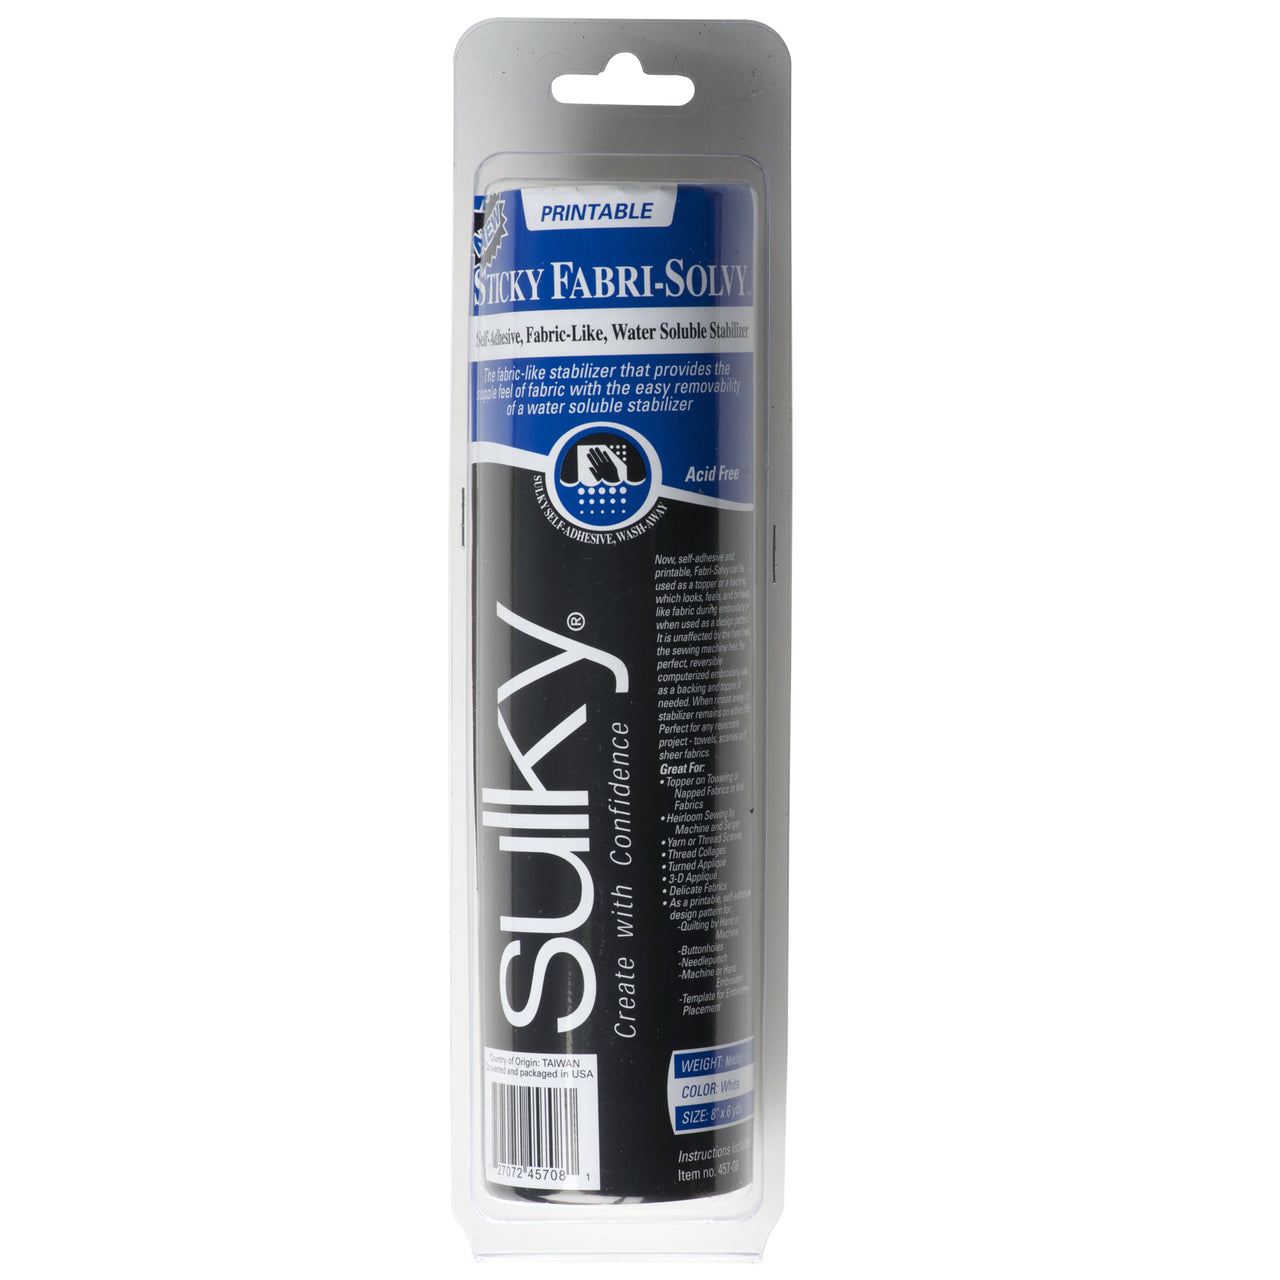 Sulky Sticky Fabri-Solvy Stabilizer 12/Pkg 8.5X11